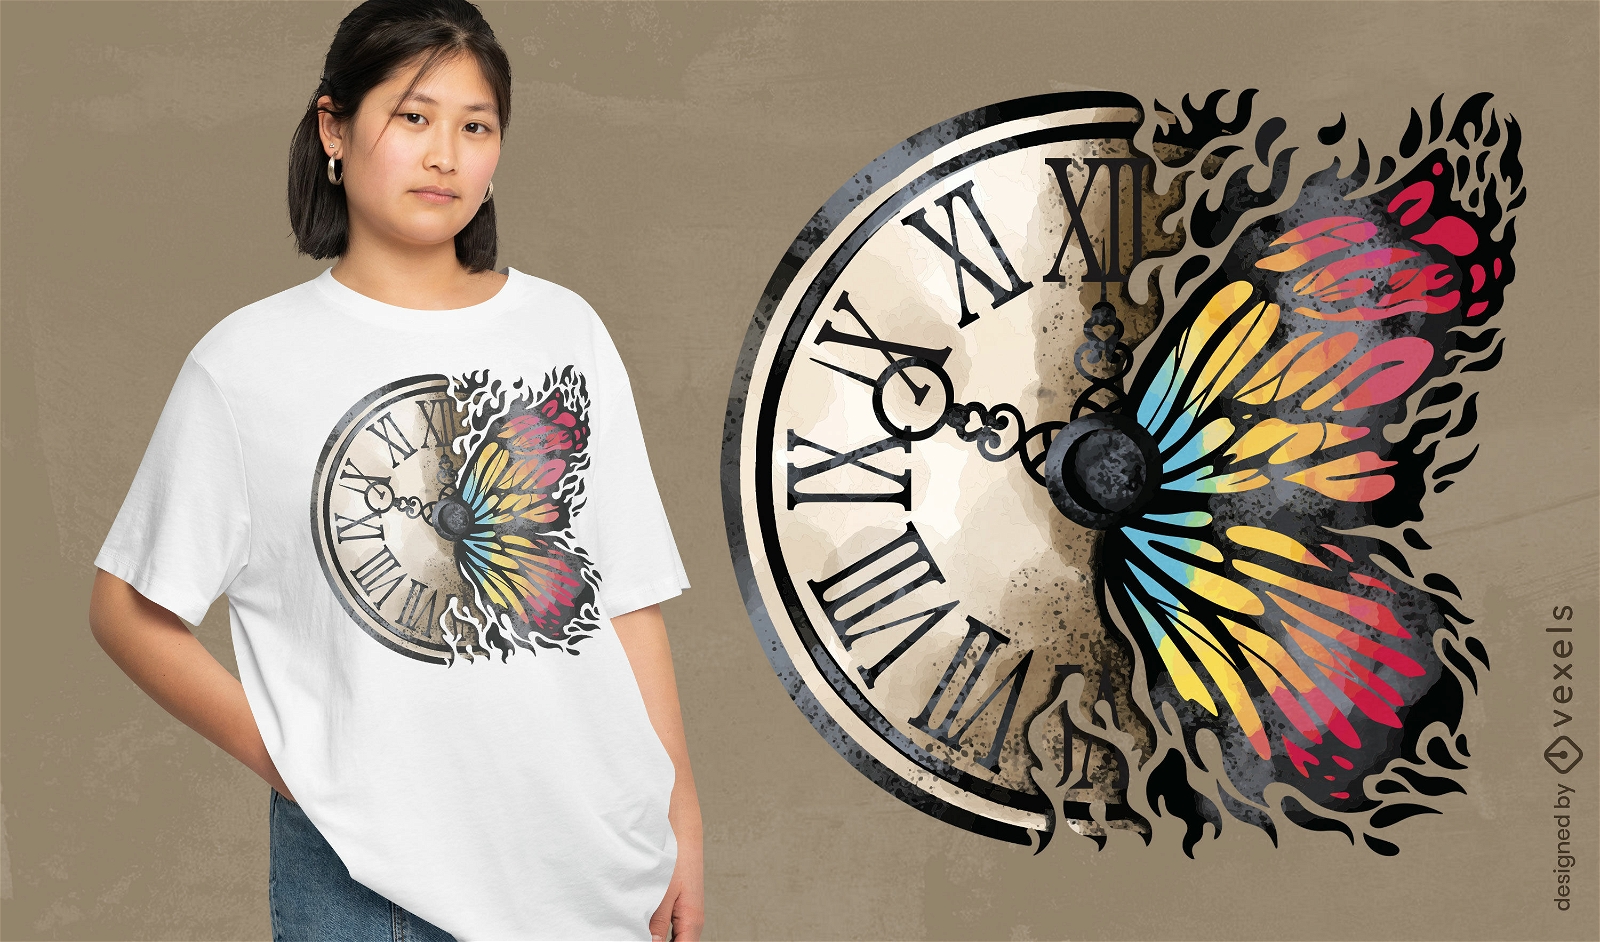 Dise?o de camiseta de mariposa y reloj vintage.